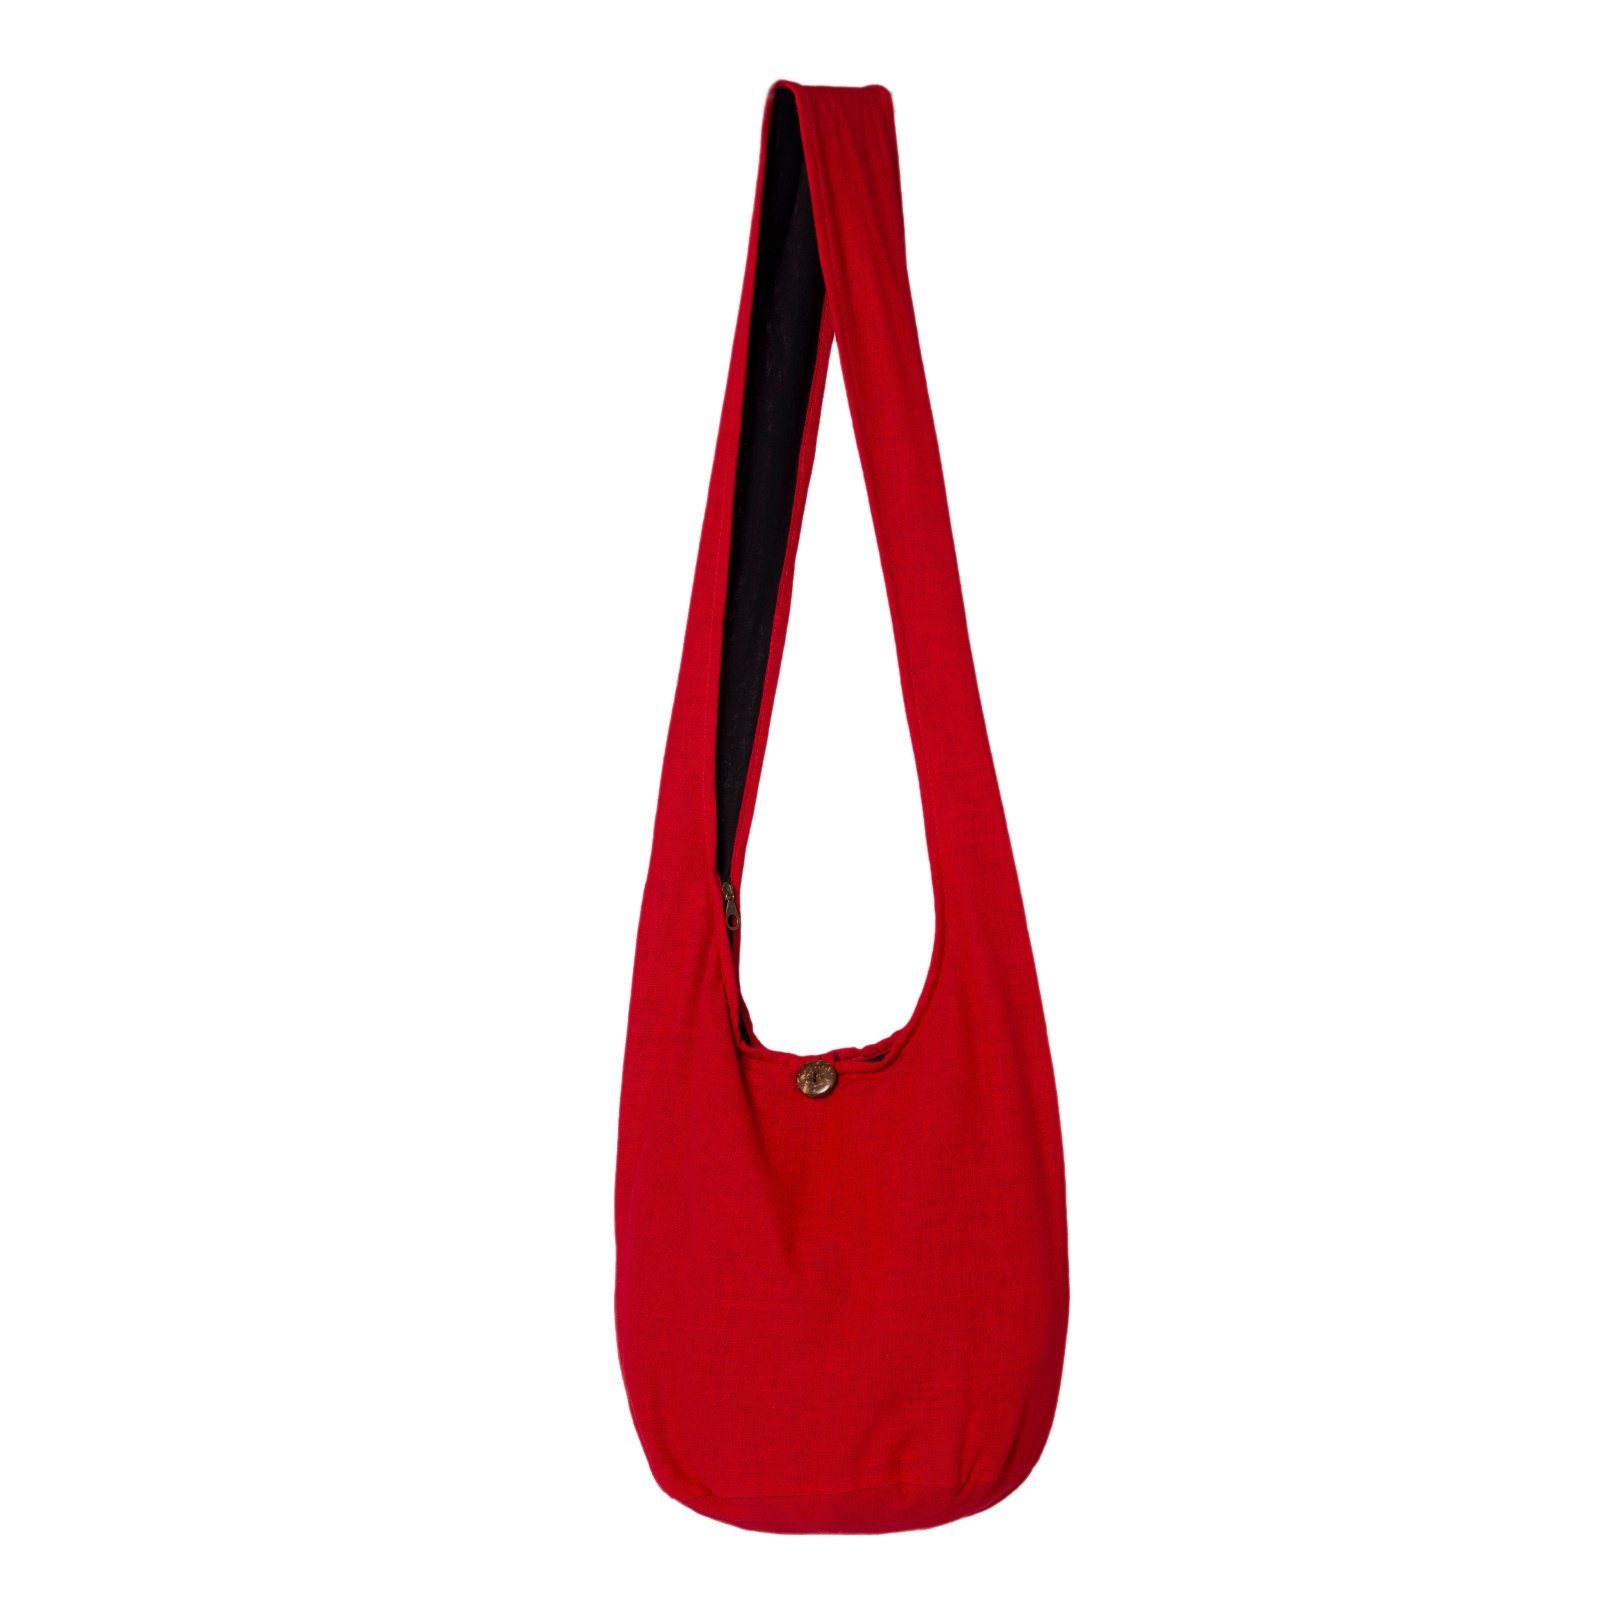 PANASIAM Beuteltasche Schulterbeutel einfarbig Schultertasche aus 100% Baumwolle in 2 Größen, Umhängetasche auch als Wickeltasche Handtasche oder Strandtasche Rot